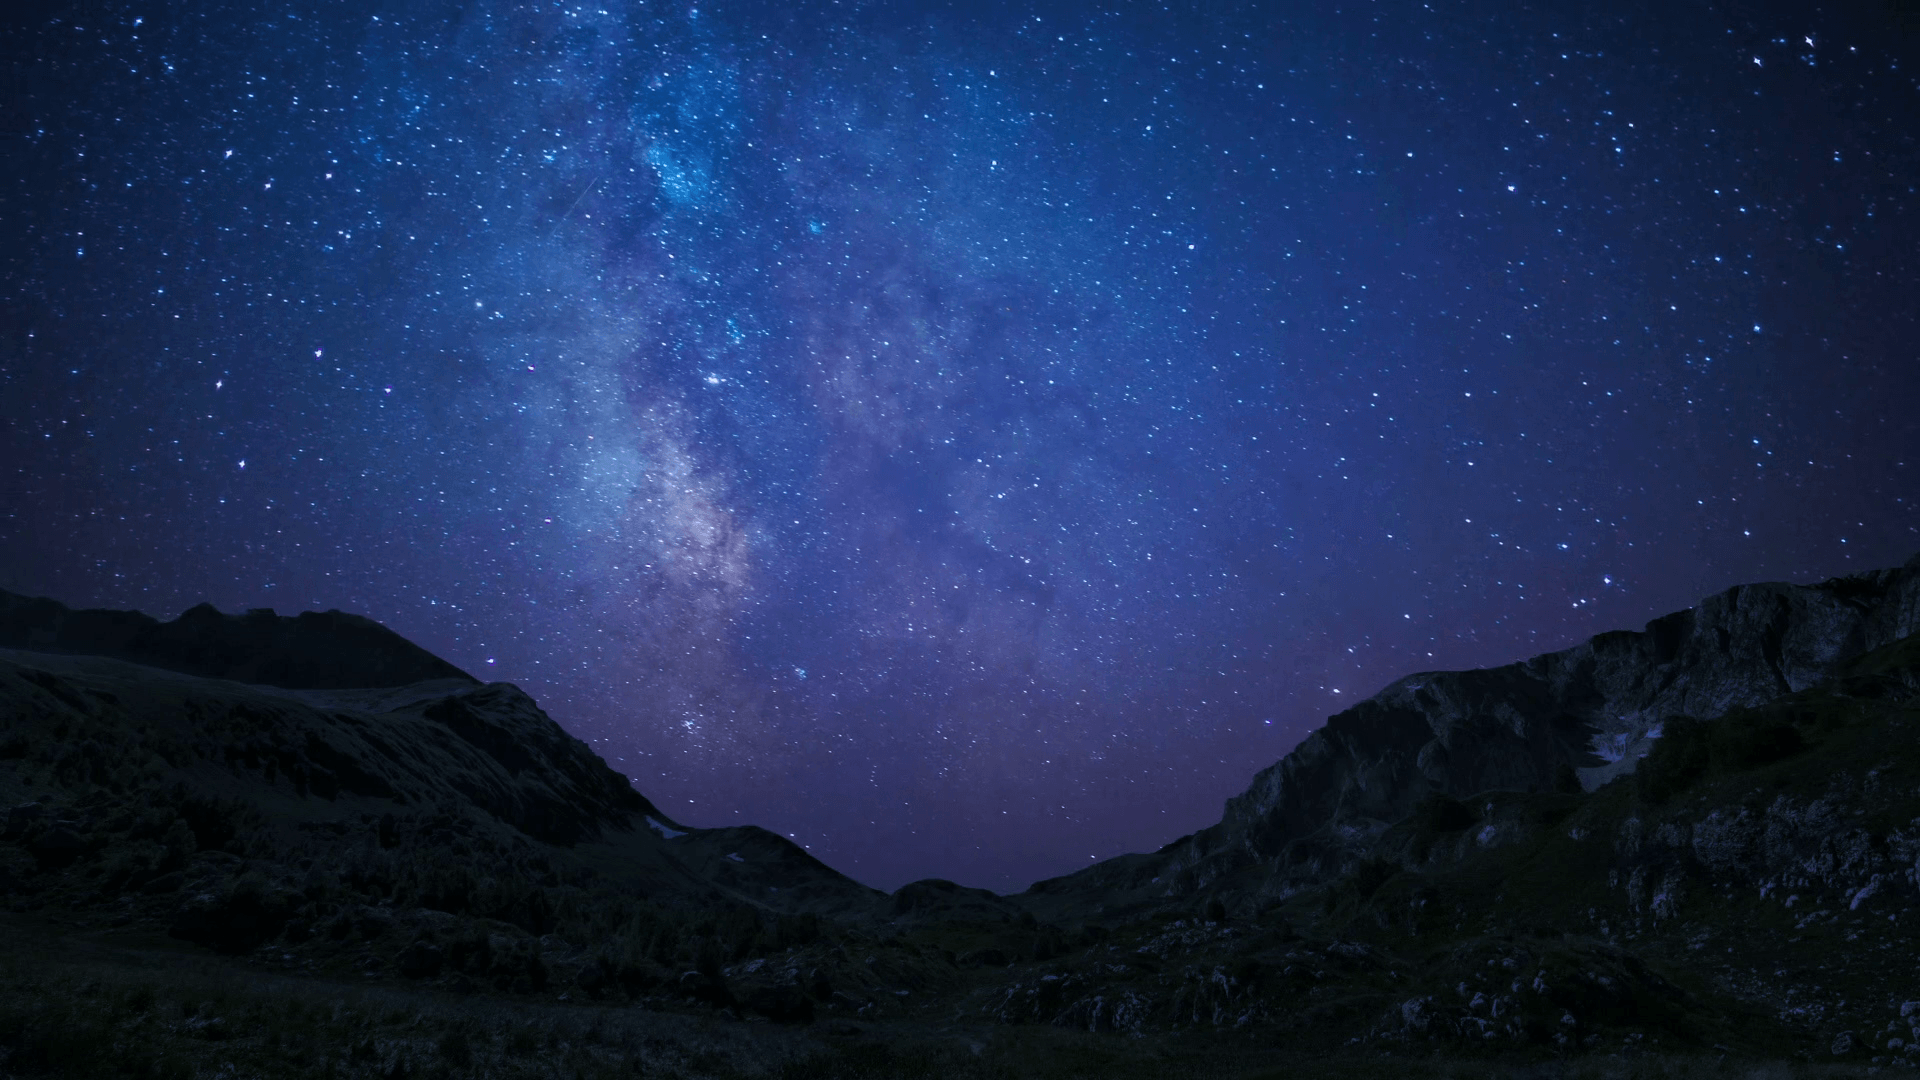 Lấy hình nền bầu trời đêm sao để làm background cho máy tính hay điện thoại của mình, bạn sẽ có một không gian sống và làm việc đầy mê hoặc và độc đáo. Hãy chọn cho mình những hình ảnh đẹp nhất để tận hưởng không khí đêm rực rỡ nguyên bản.